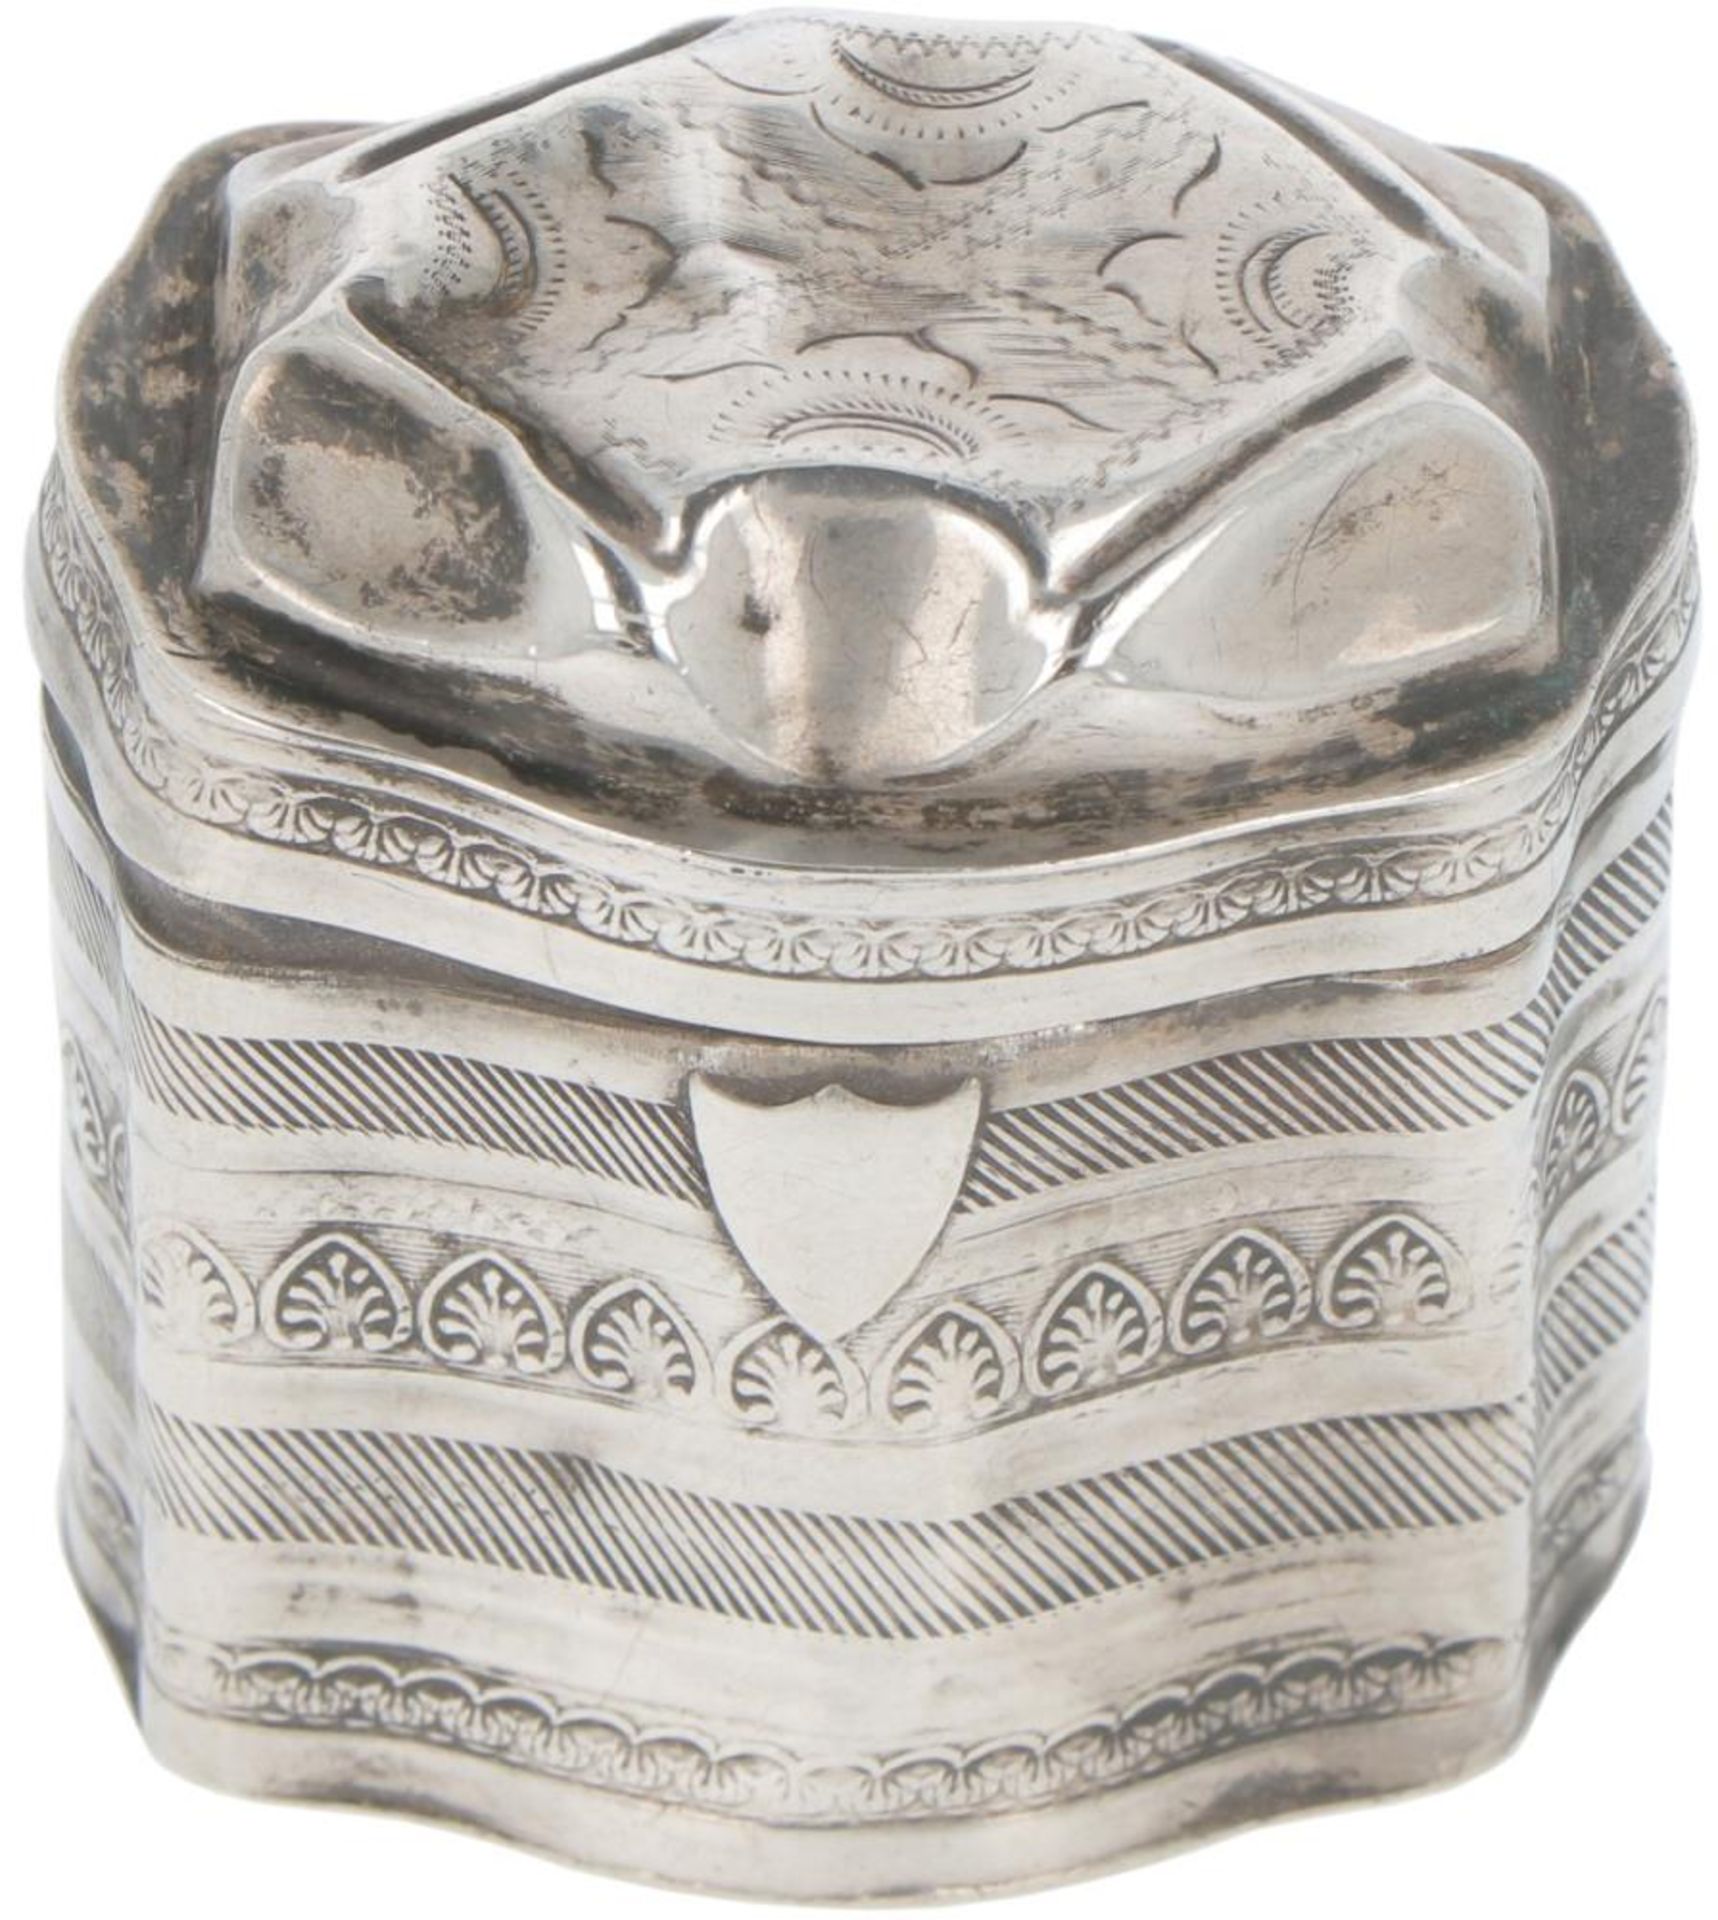 Loderein box silver.